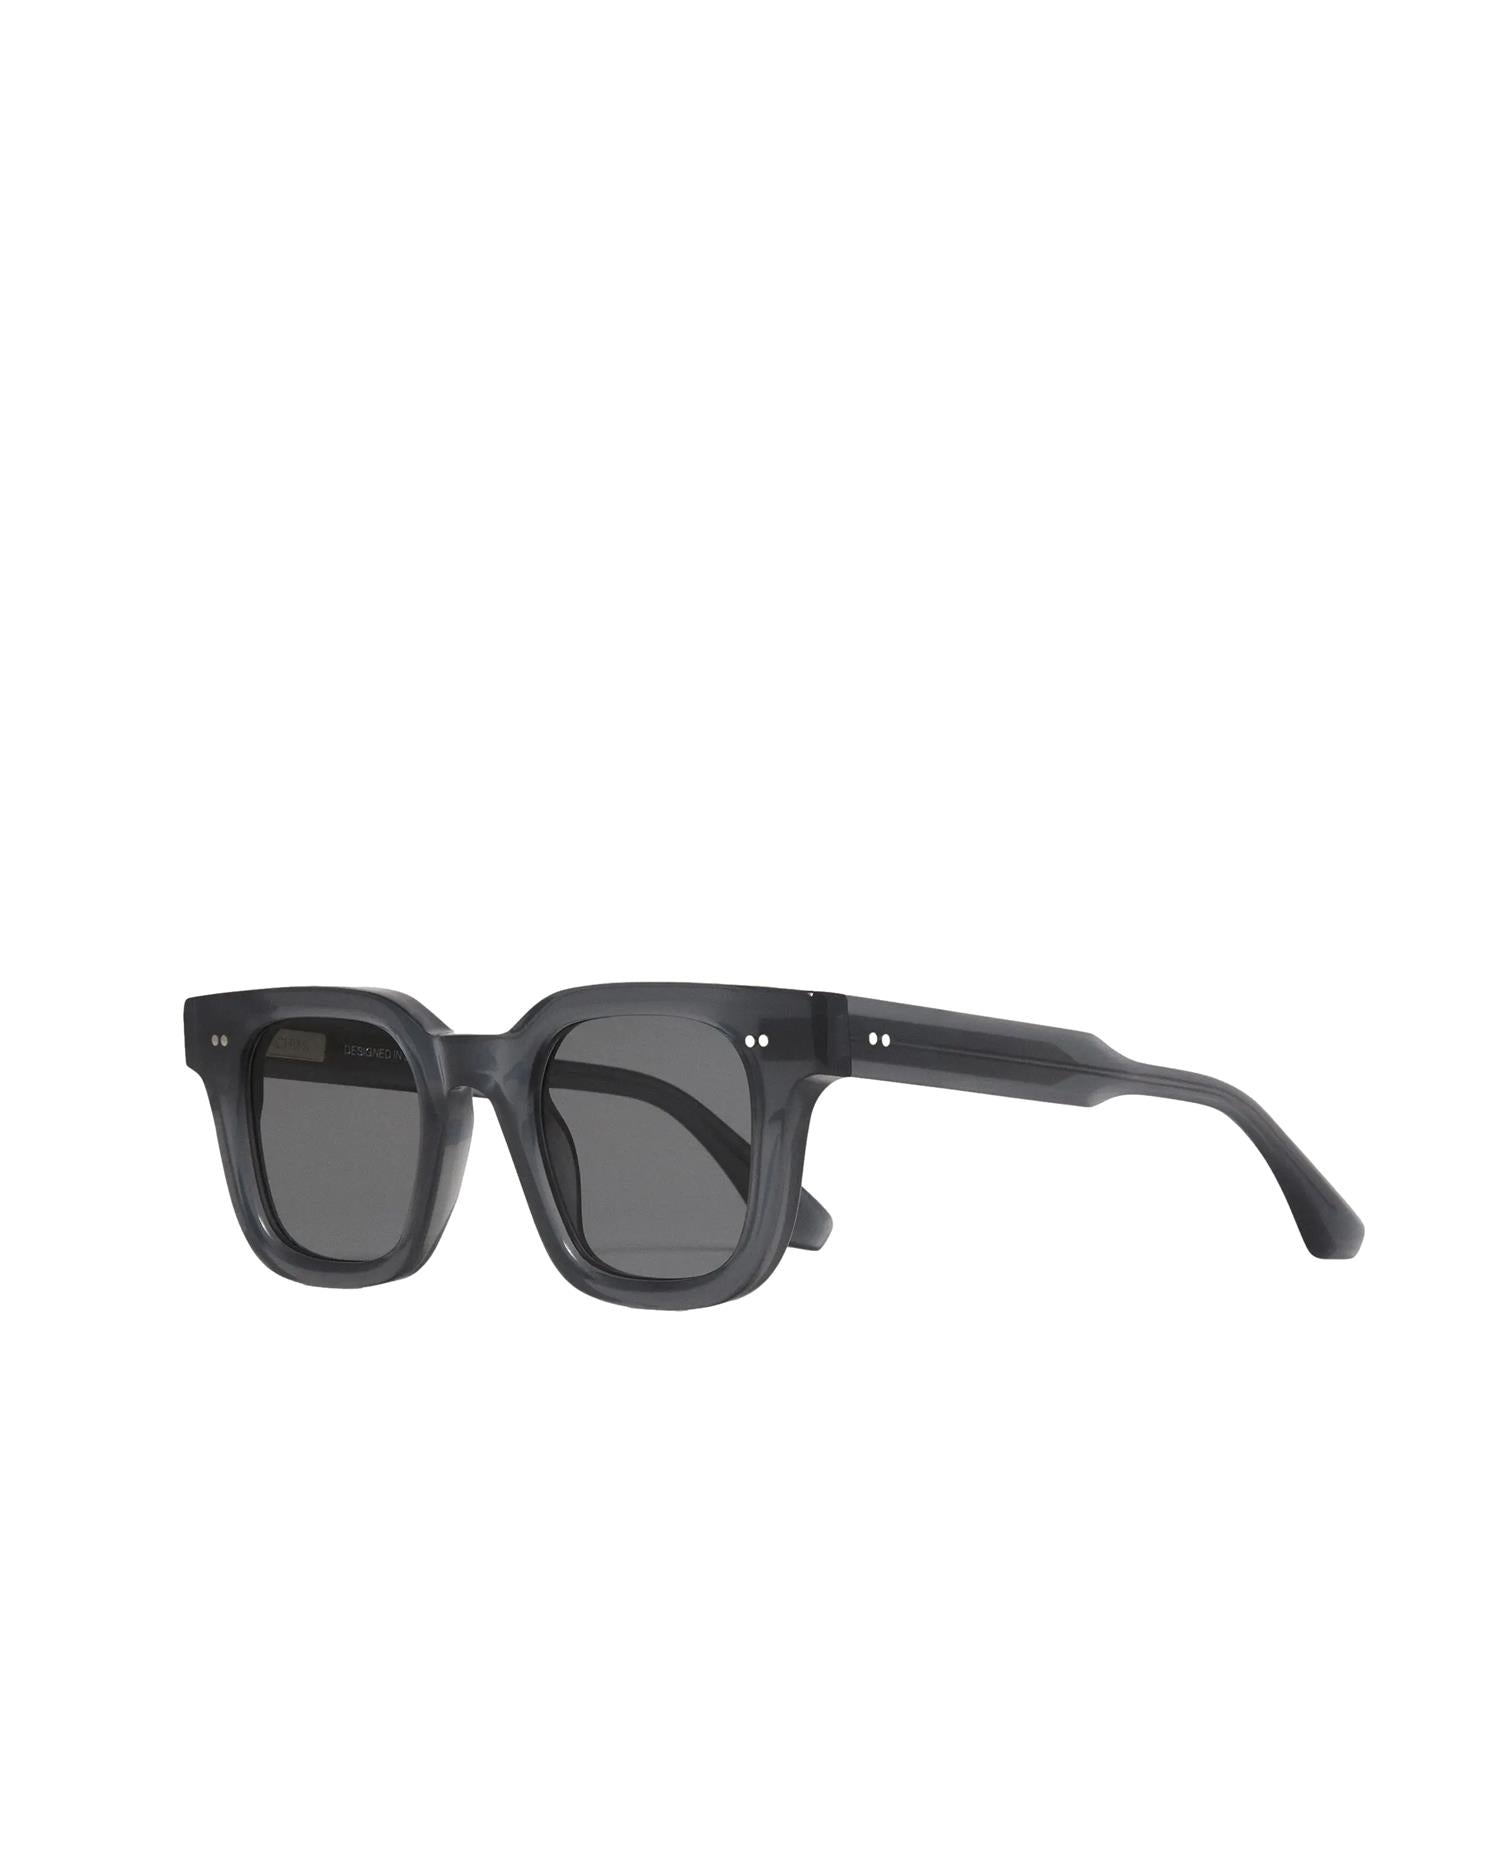 Chimi Eyewear 04 Dark Grey Solbriller Mørkegrå - modostore.no